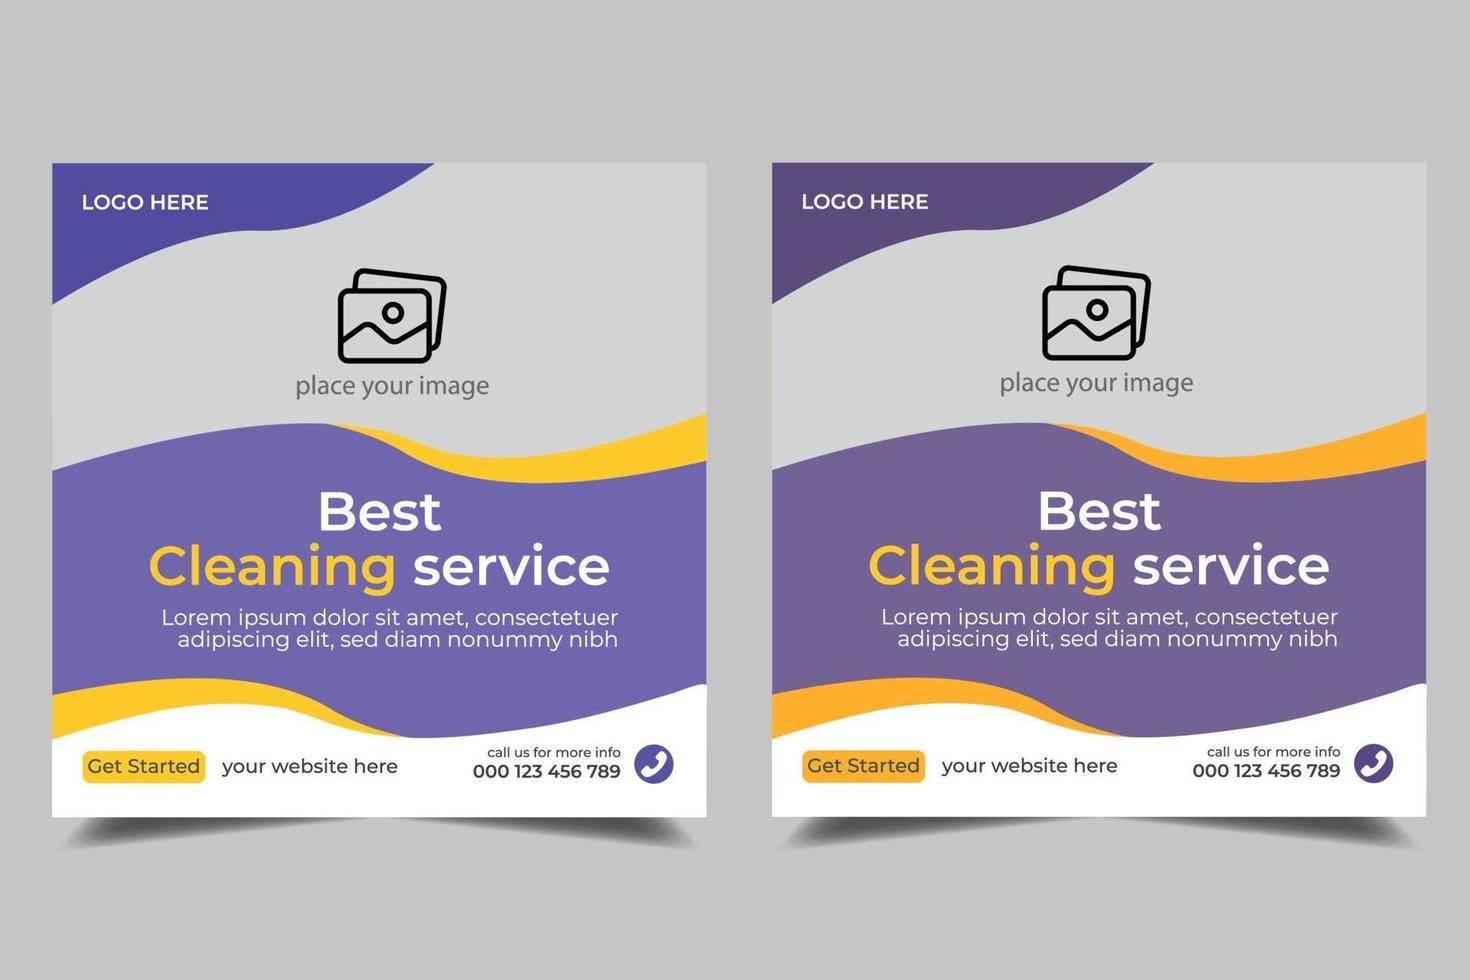 miglior servizio di pulizia per il modello di banner web e il layout del banner post sui social media di marketing aziendale per la pulizia della casa vettore